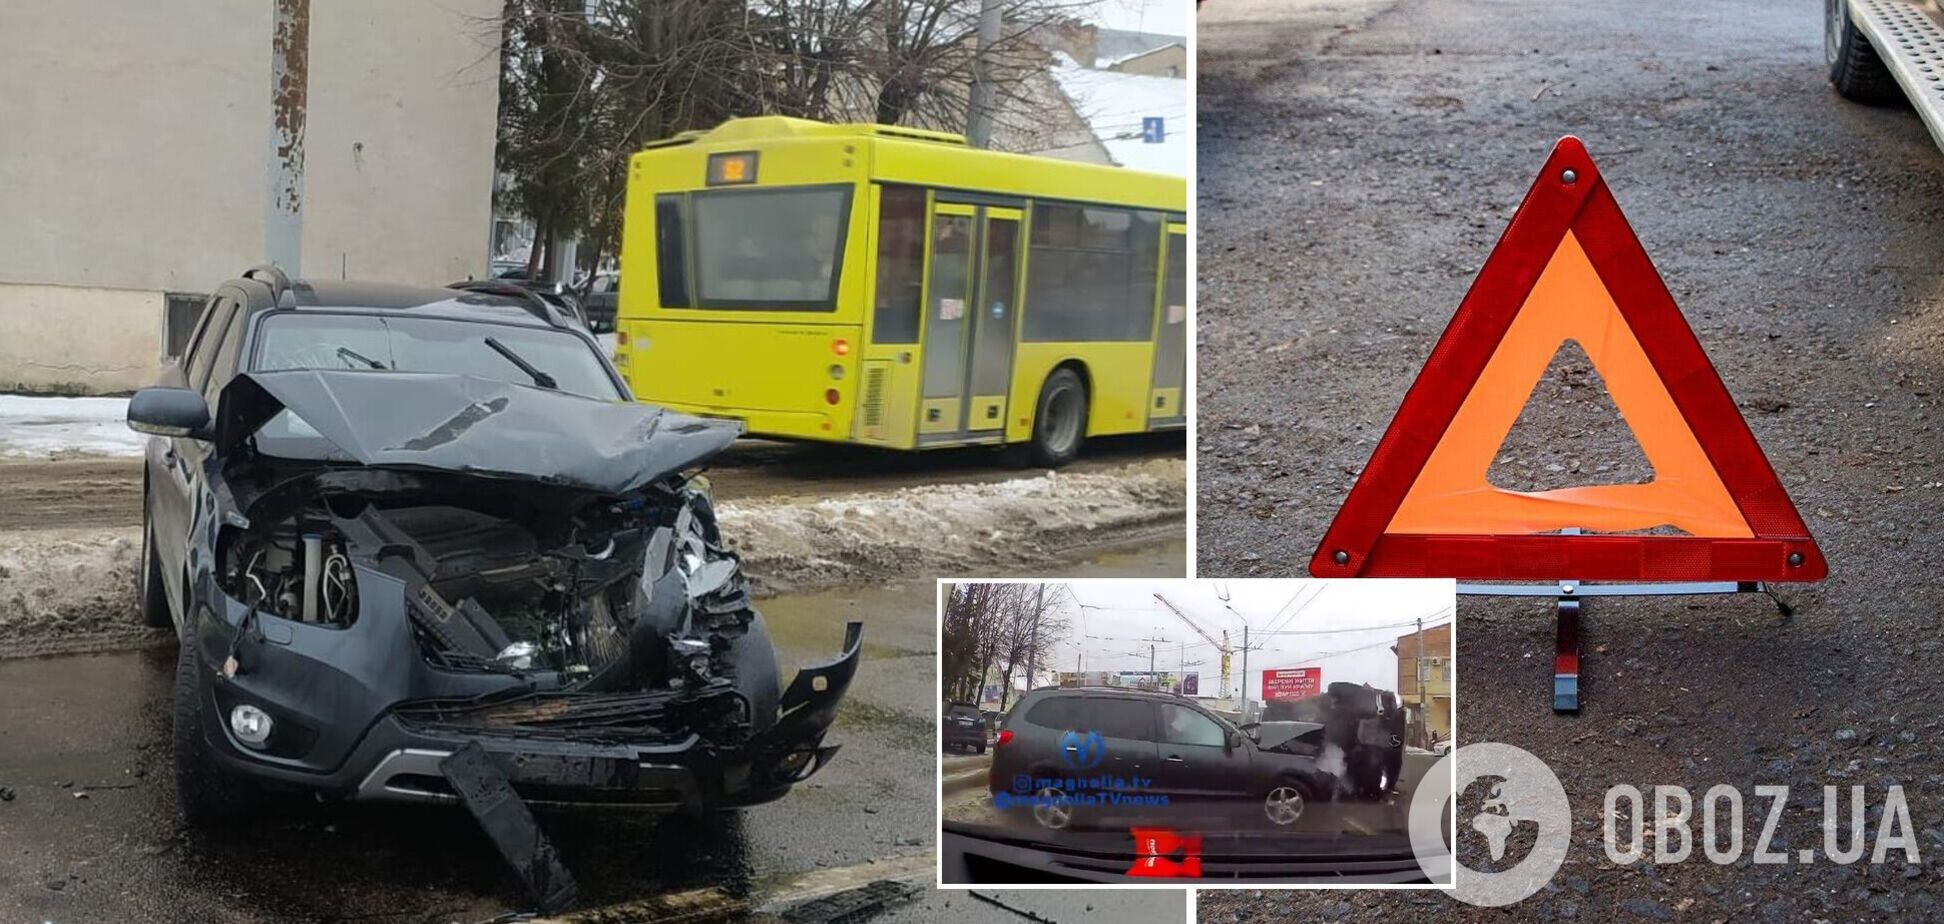 Во Львове микроавтобус с пассажирами протаранил три авто: много пострадавших. Видео